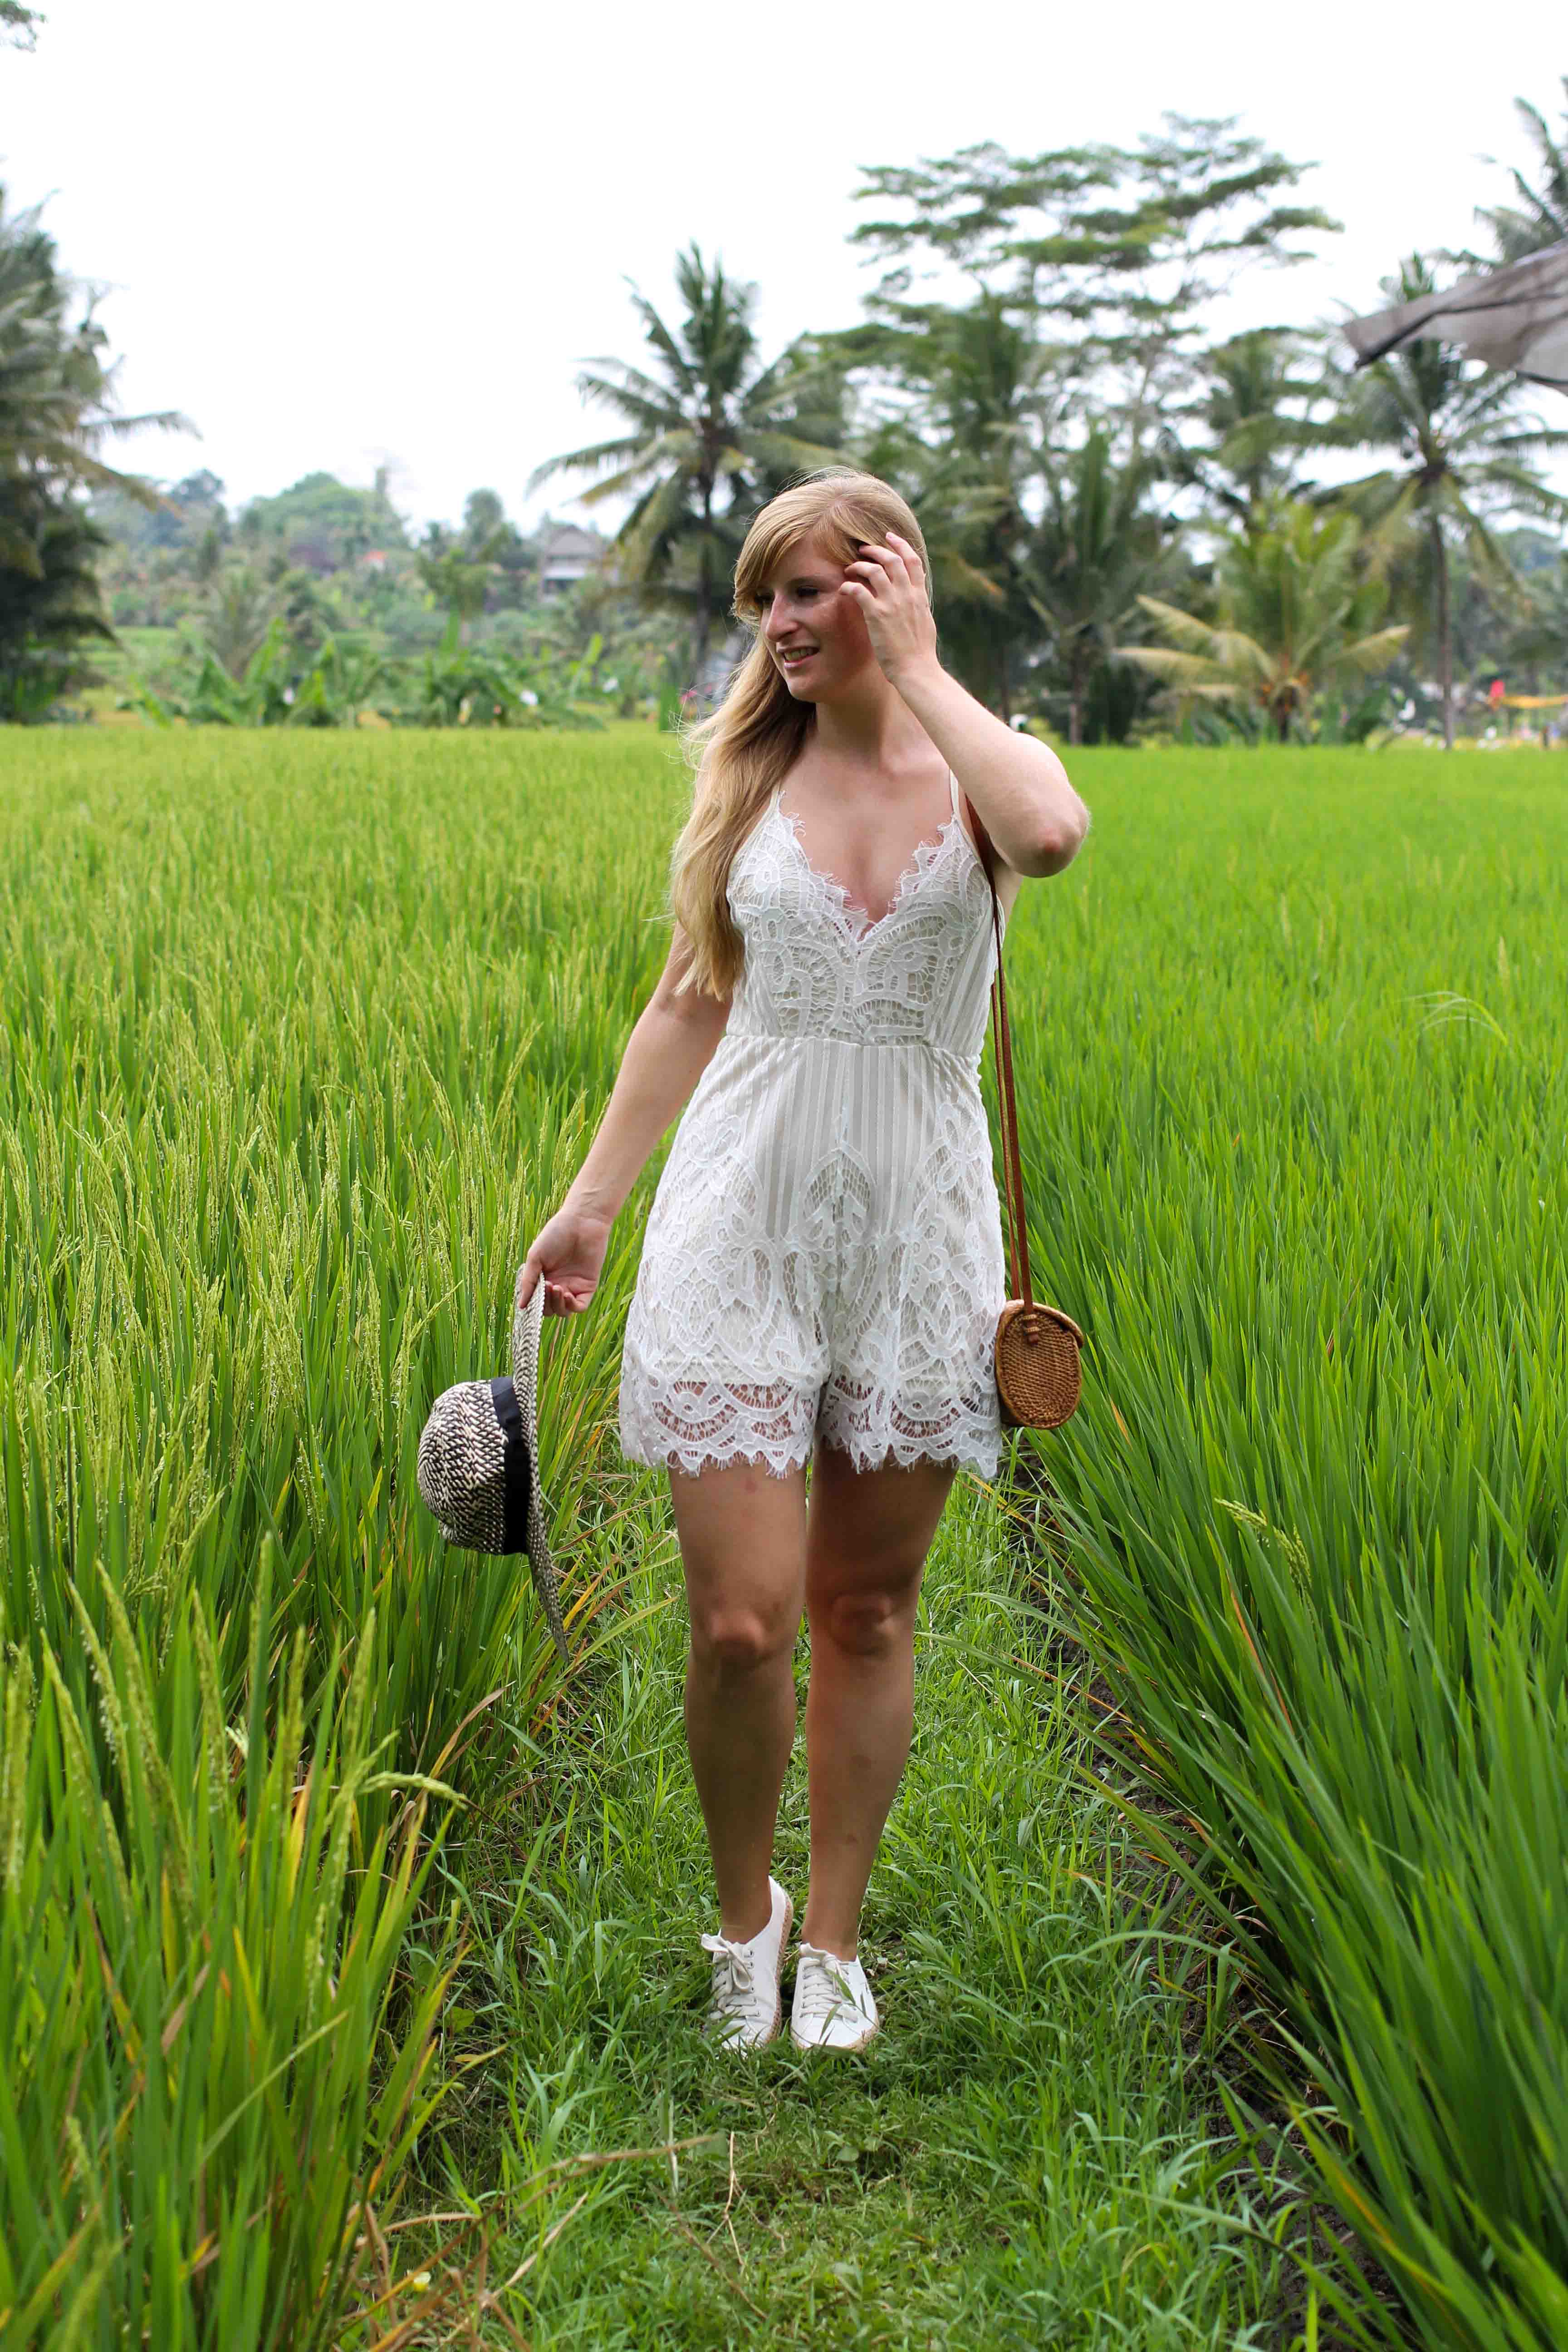 Weißer Jumpsuit kombinieren Spitze strohhut Reisfeldern Ubud Sommeroutfit Bali Modeblog Sightseeing